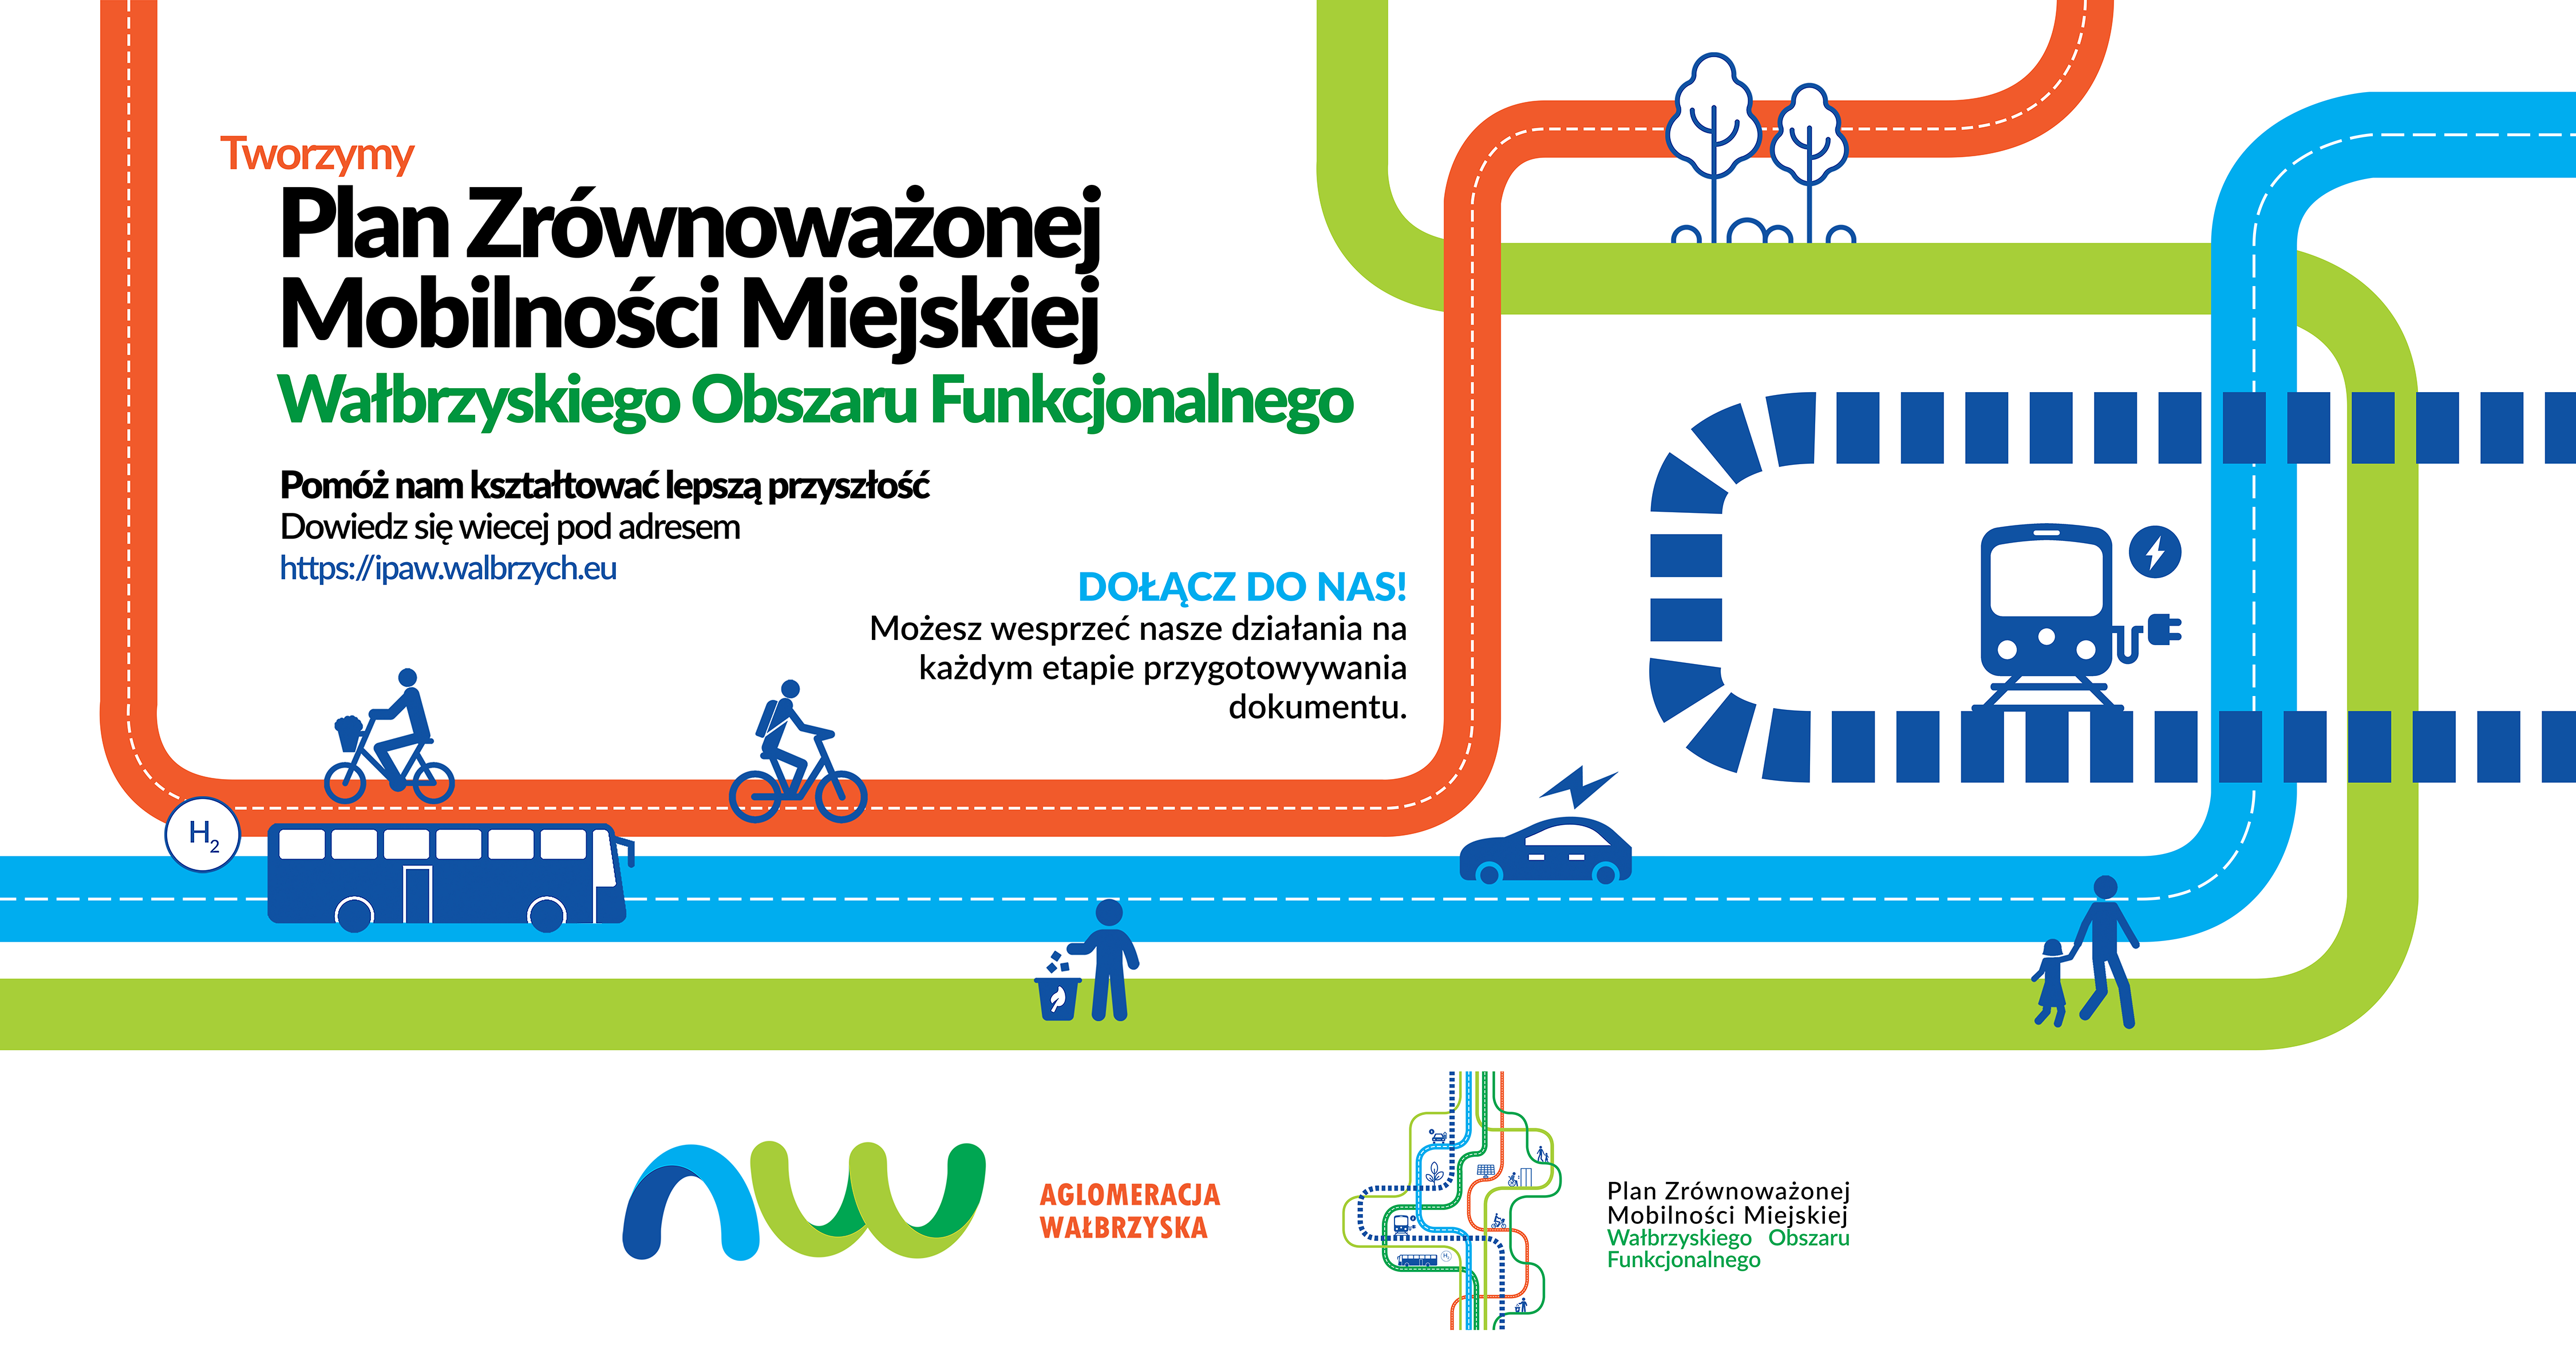 Tworzymy Plan Zrównoważonej Mobilności Miejskiej Wałbrzyskiego Obszaru Funkcjonalnego Pomóż nam kształtować lepszą przyszłość. Dowiedz się więcej pod adresem https://ipaw.walbrzych.eu DOŁĄCZ DO NAS! Możesz wesprzeć nasze działania na każdym etapie przygotowywania dokumentu.